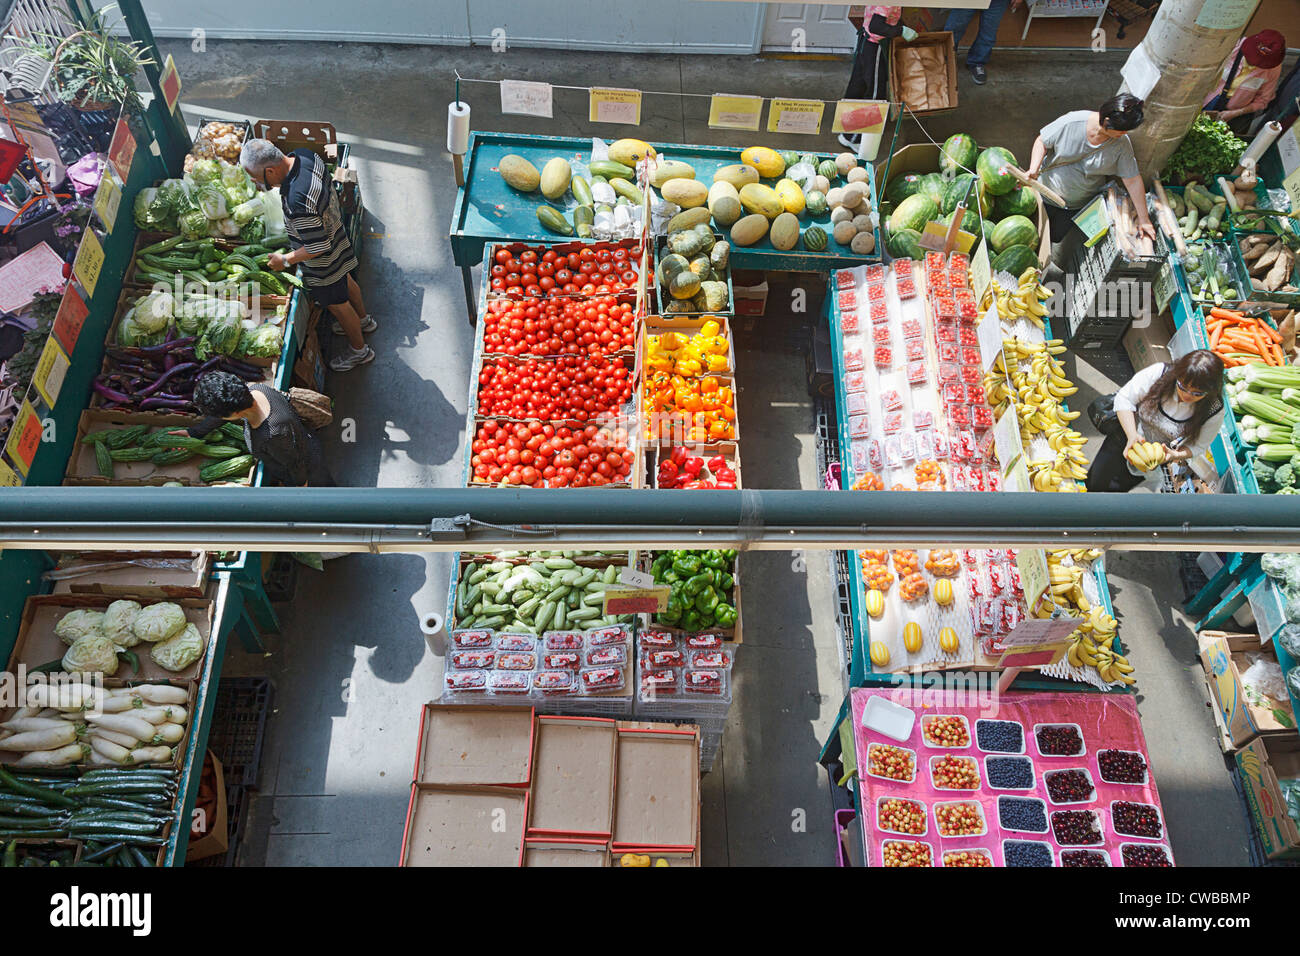 Les légumes frais et les autres produits alimentaires en vente au marché public de Richmond, qui a aussi une aire de restauration avec cuisine asiatique authentique. Banque D'Images